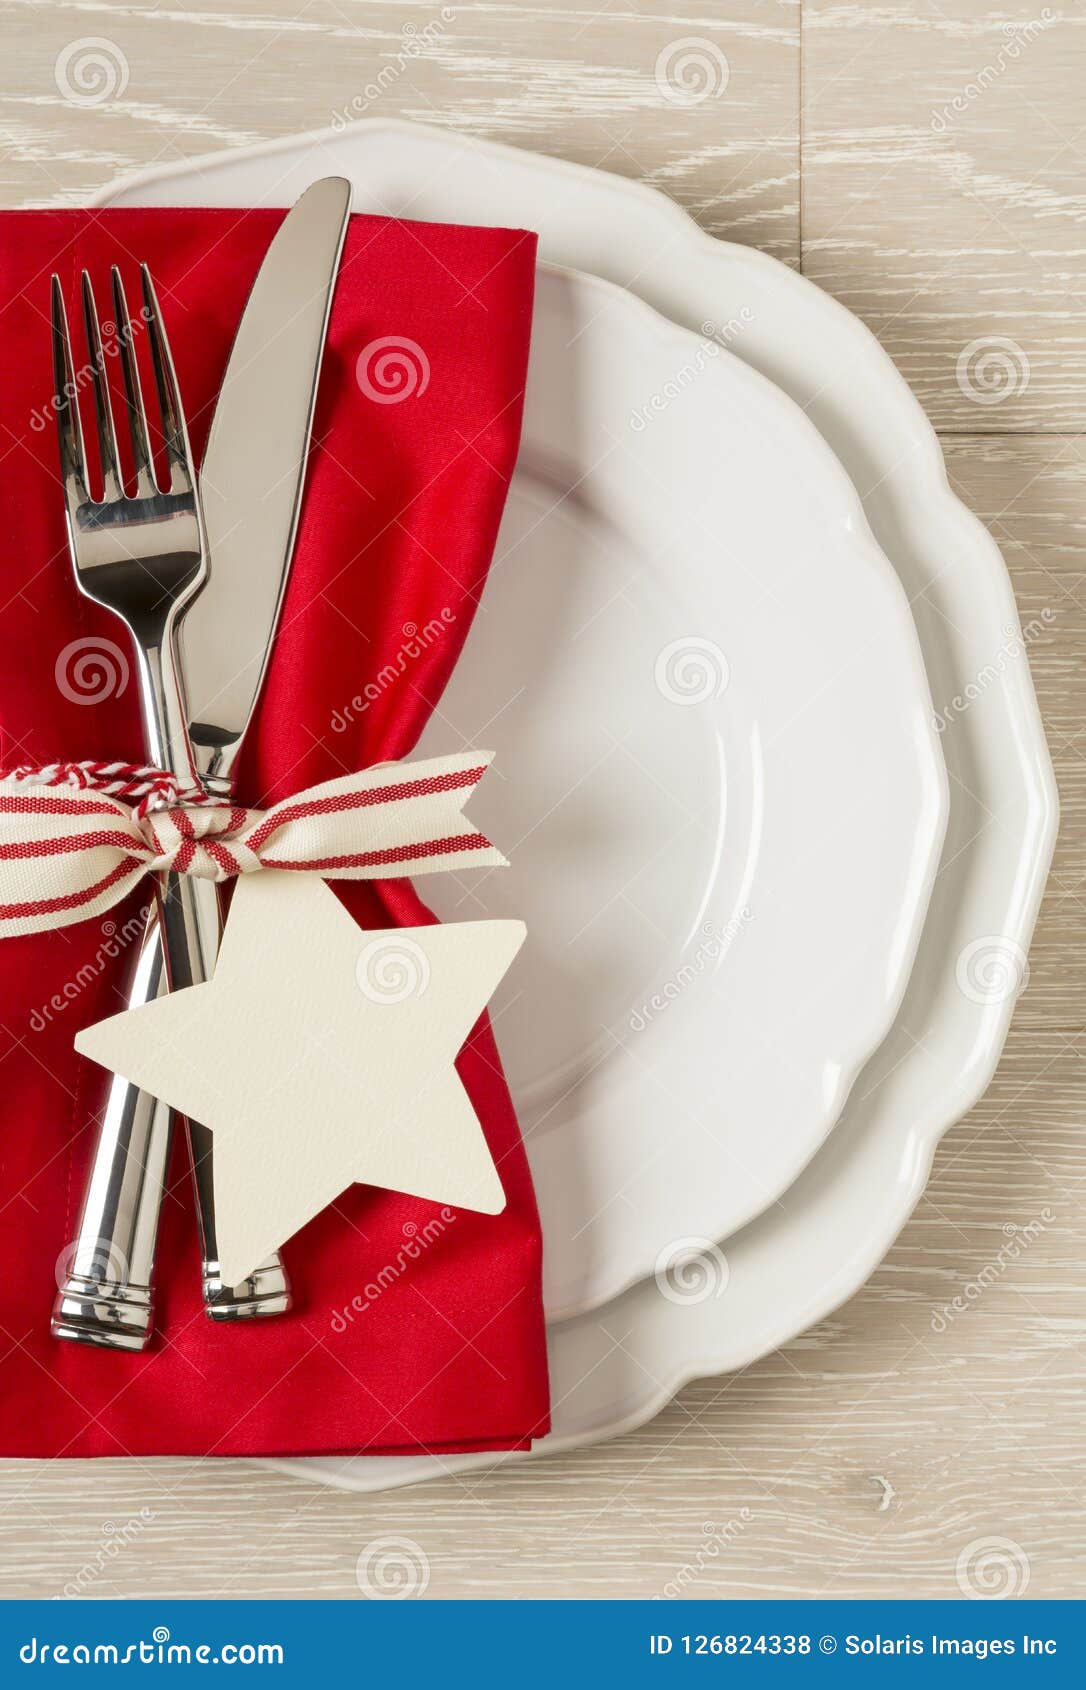 Couvert De Table De Dîner De Noël Avec Les Décorations Saisonnières De Fête  Photo stock - Image du fourchette, plat: 79185304